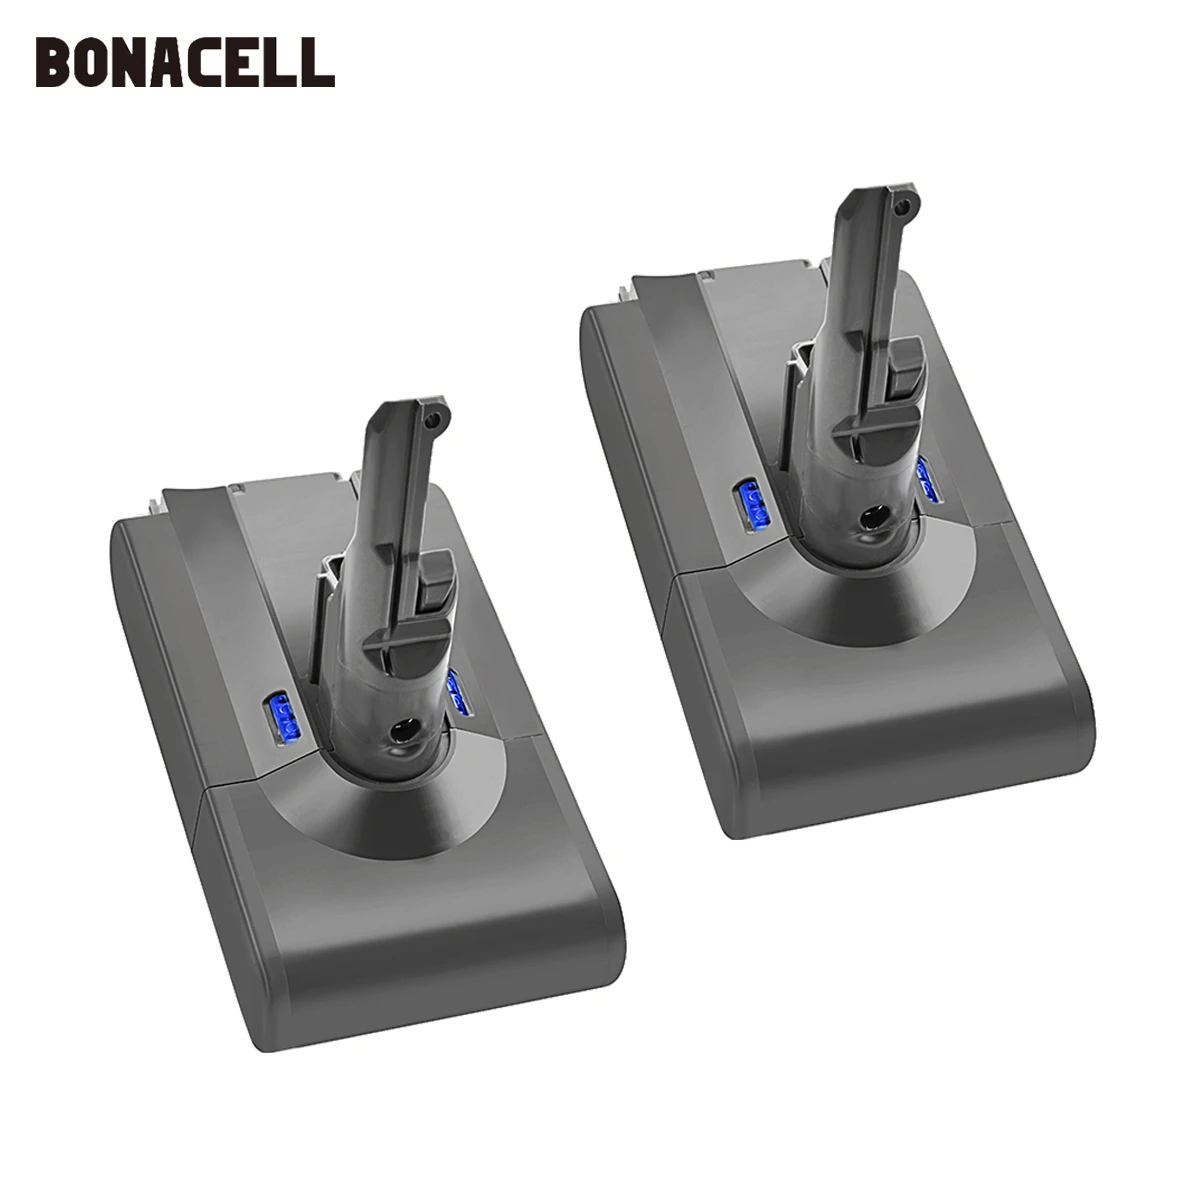 Bonacell 4000mAh 21.6V Battery For Dyson V8 Battery  V8 series ,V8 Absolute Li-ion SV10 Vacuum Cleaner Rechargeable BATTERY L70